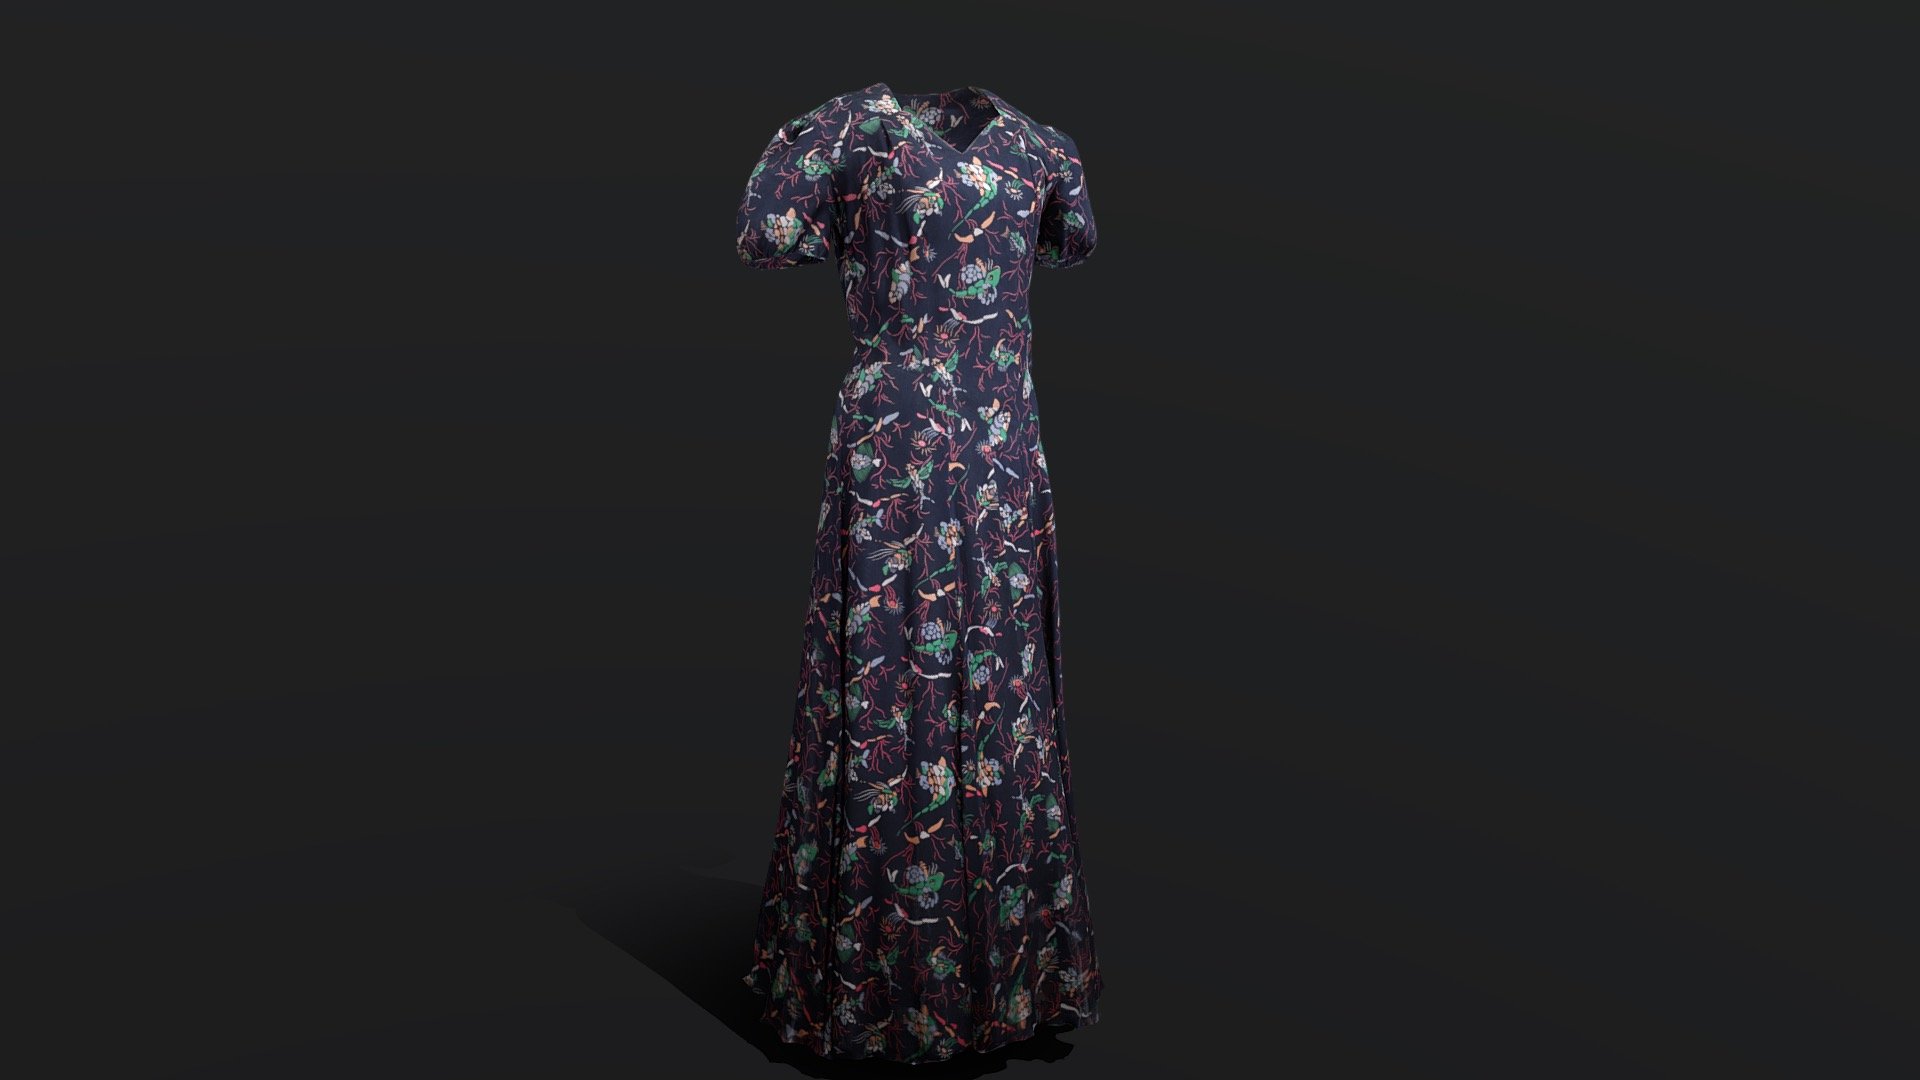 Crysede silk dress - 3D model by penleehousegallery [46f93ea] - Sketchfab